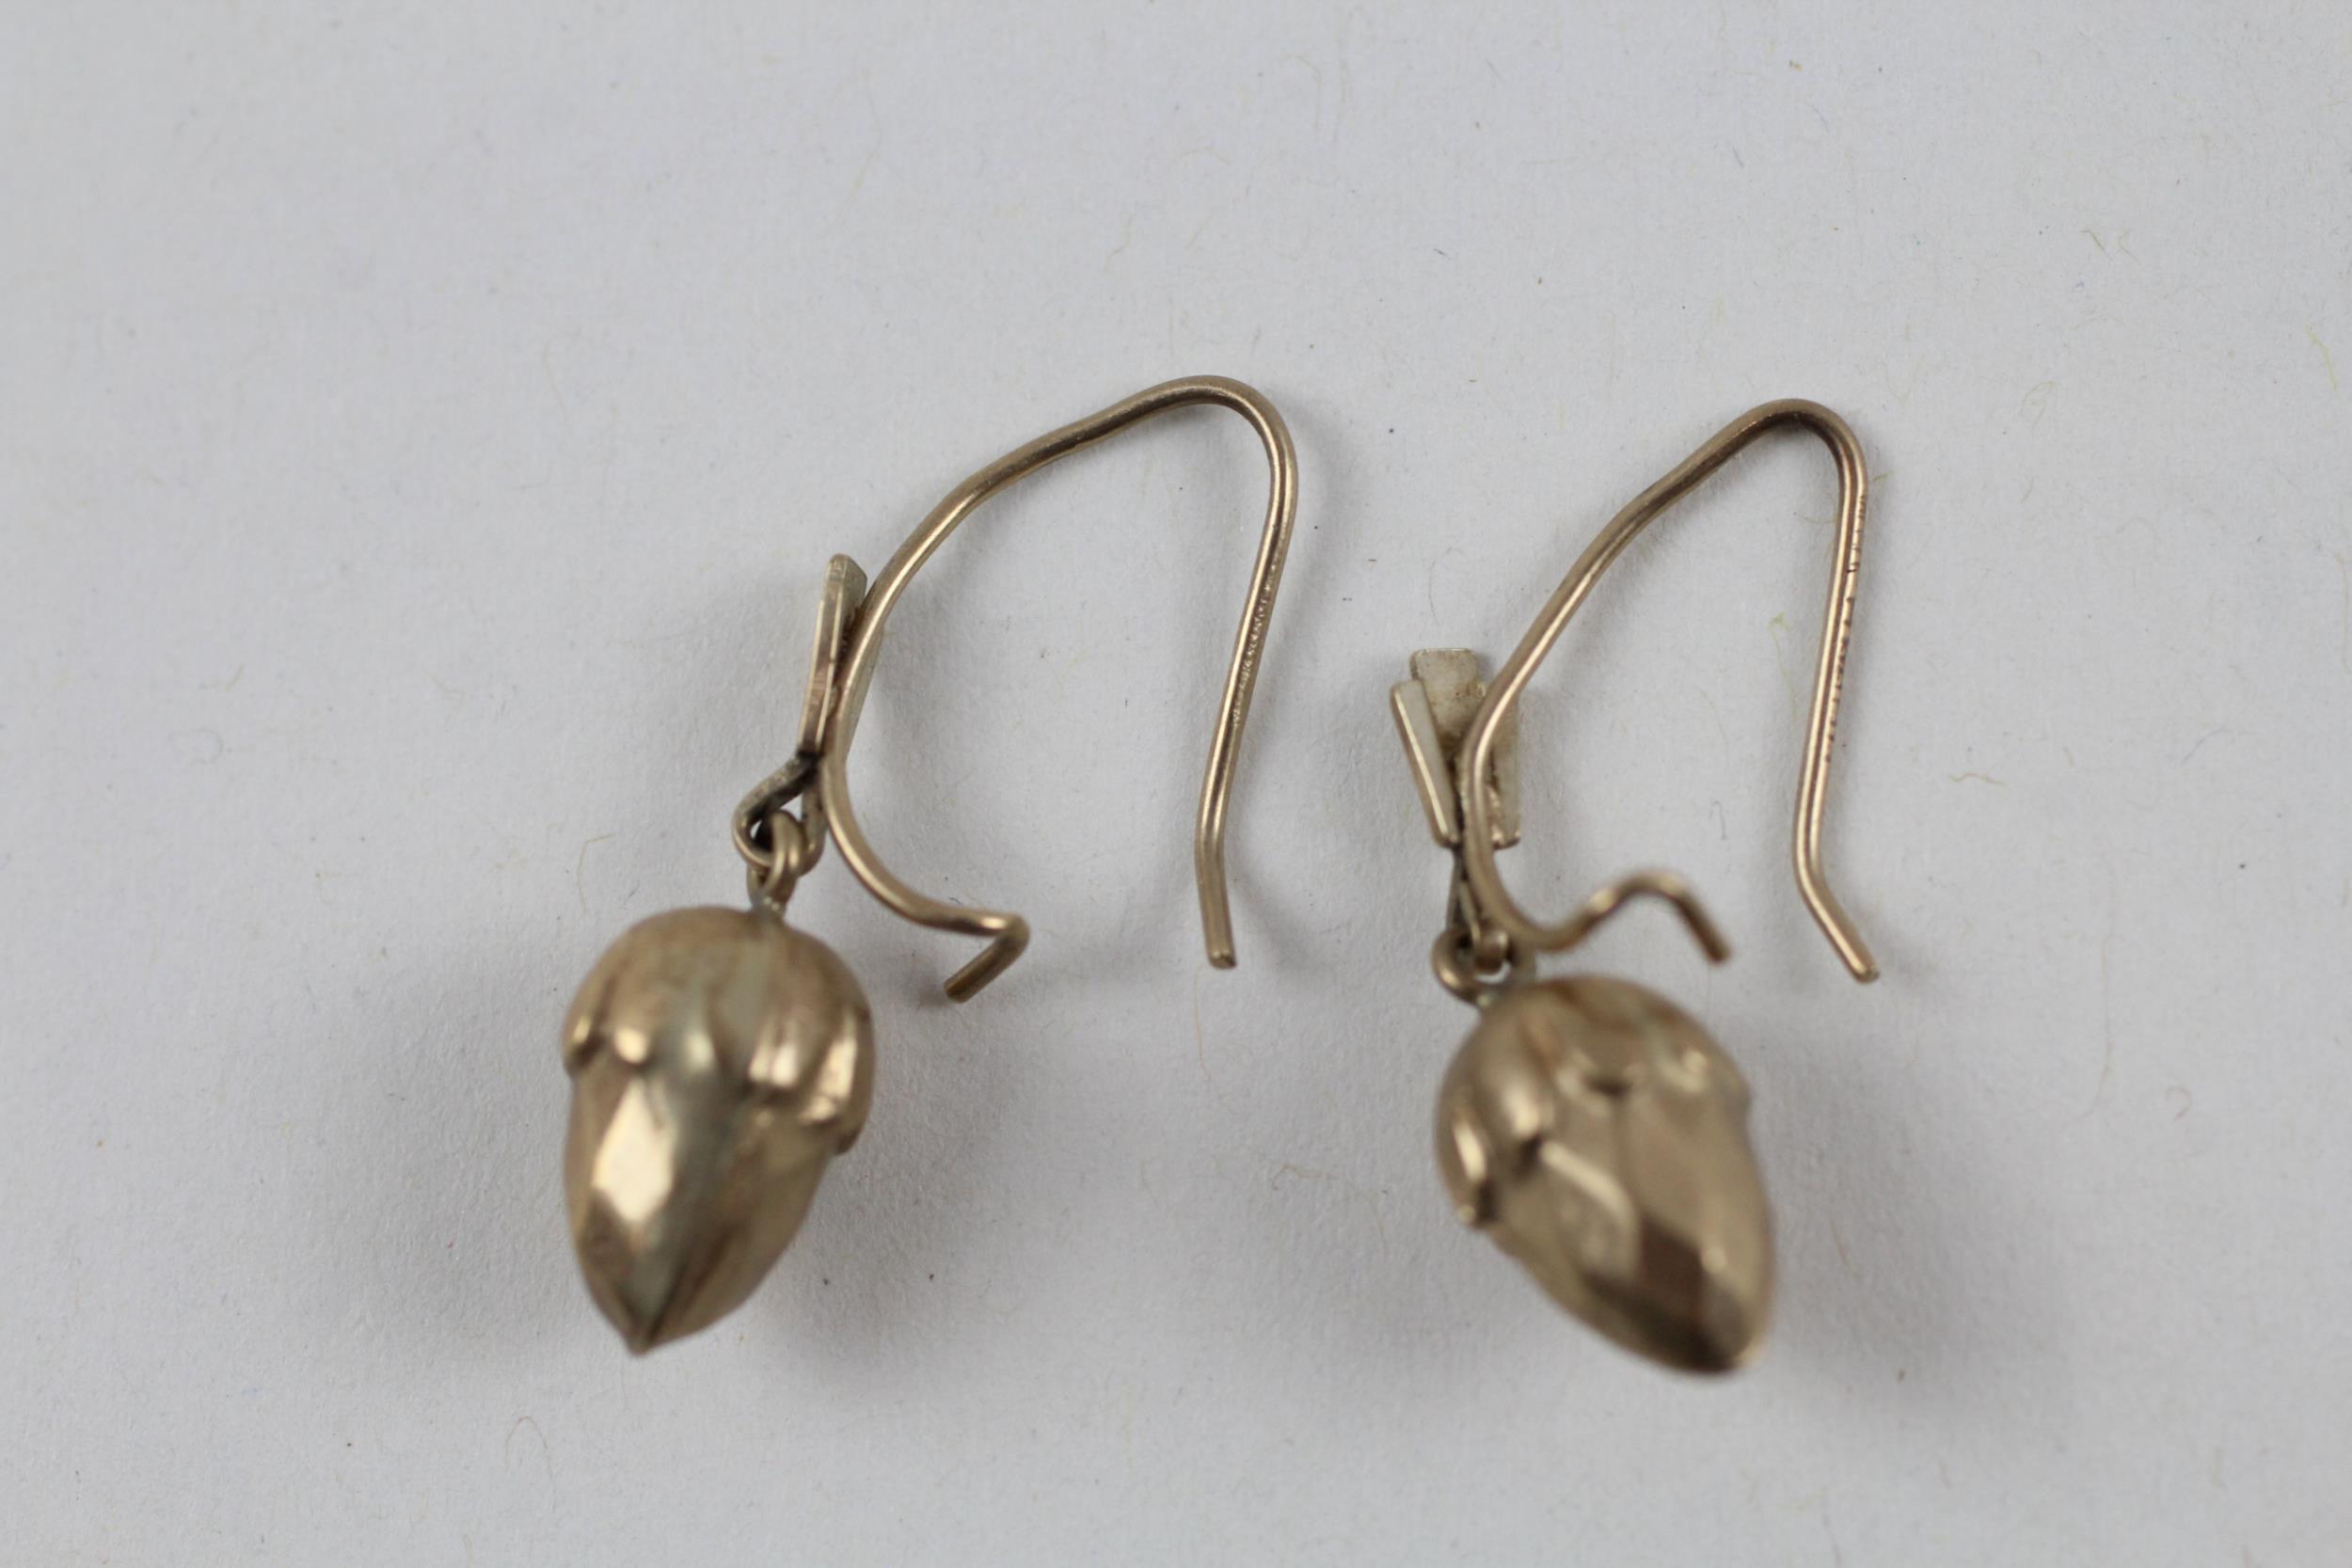 9ct gold vintage acorn drop earrings (1g) - Image 4 of 5